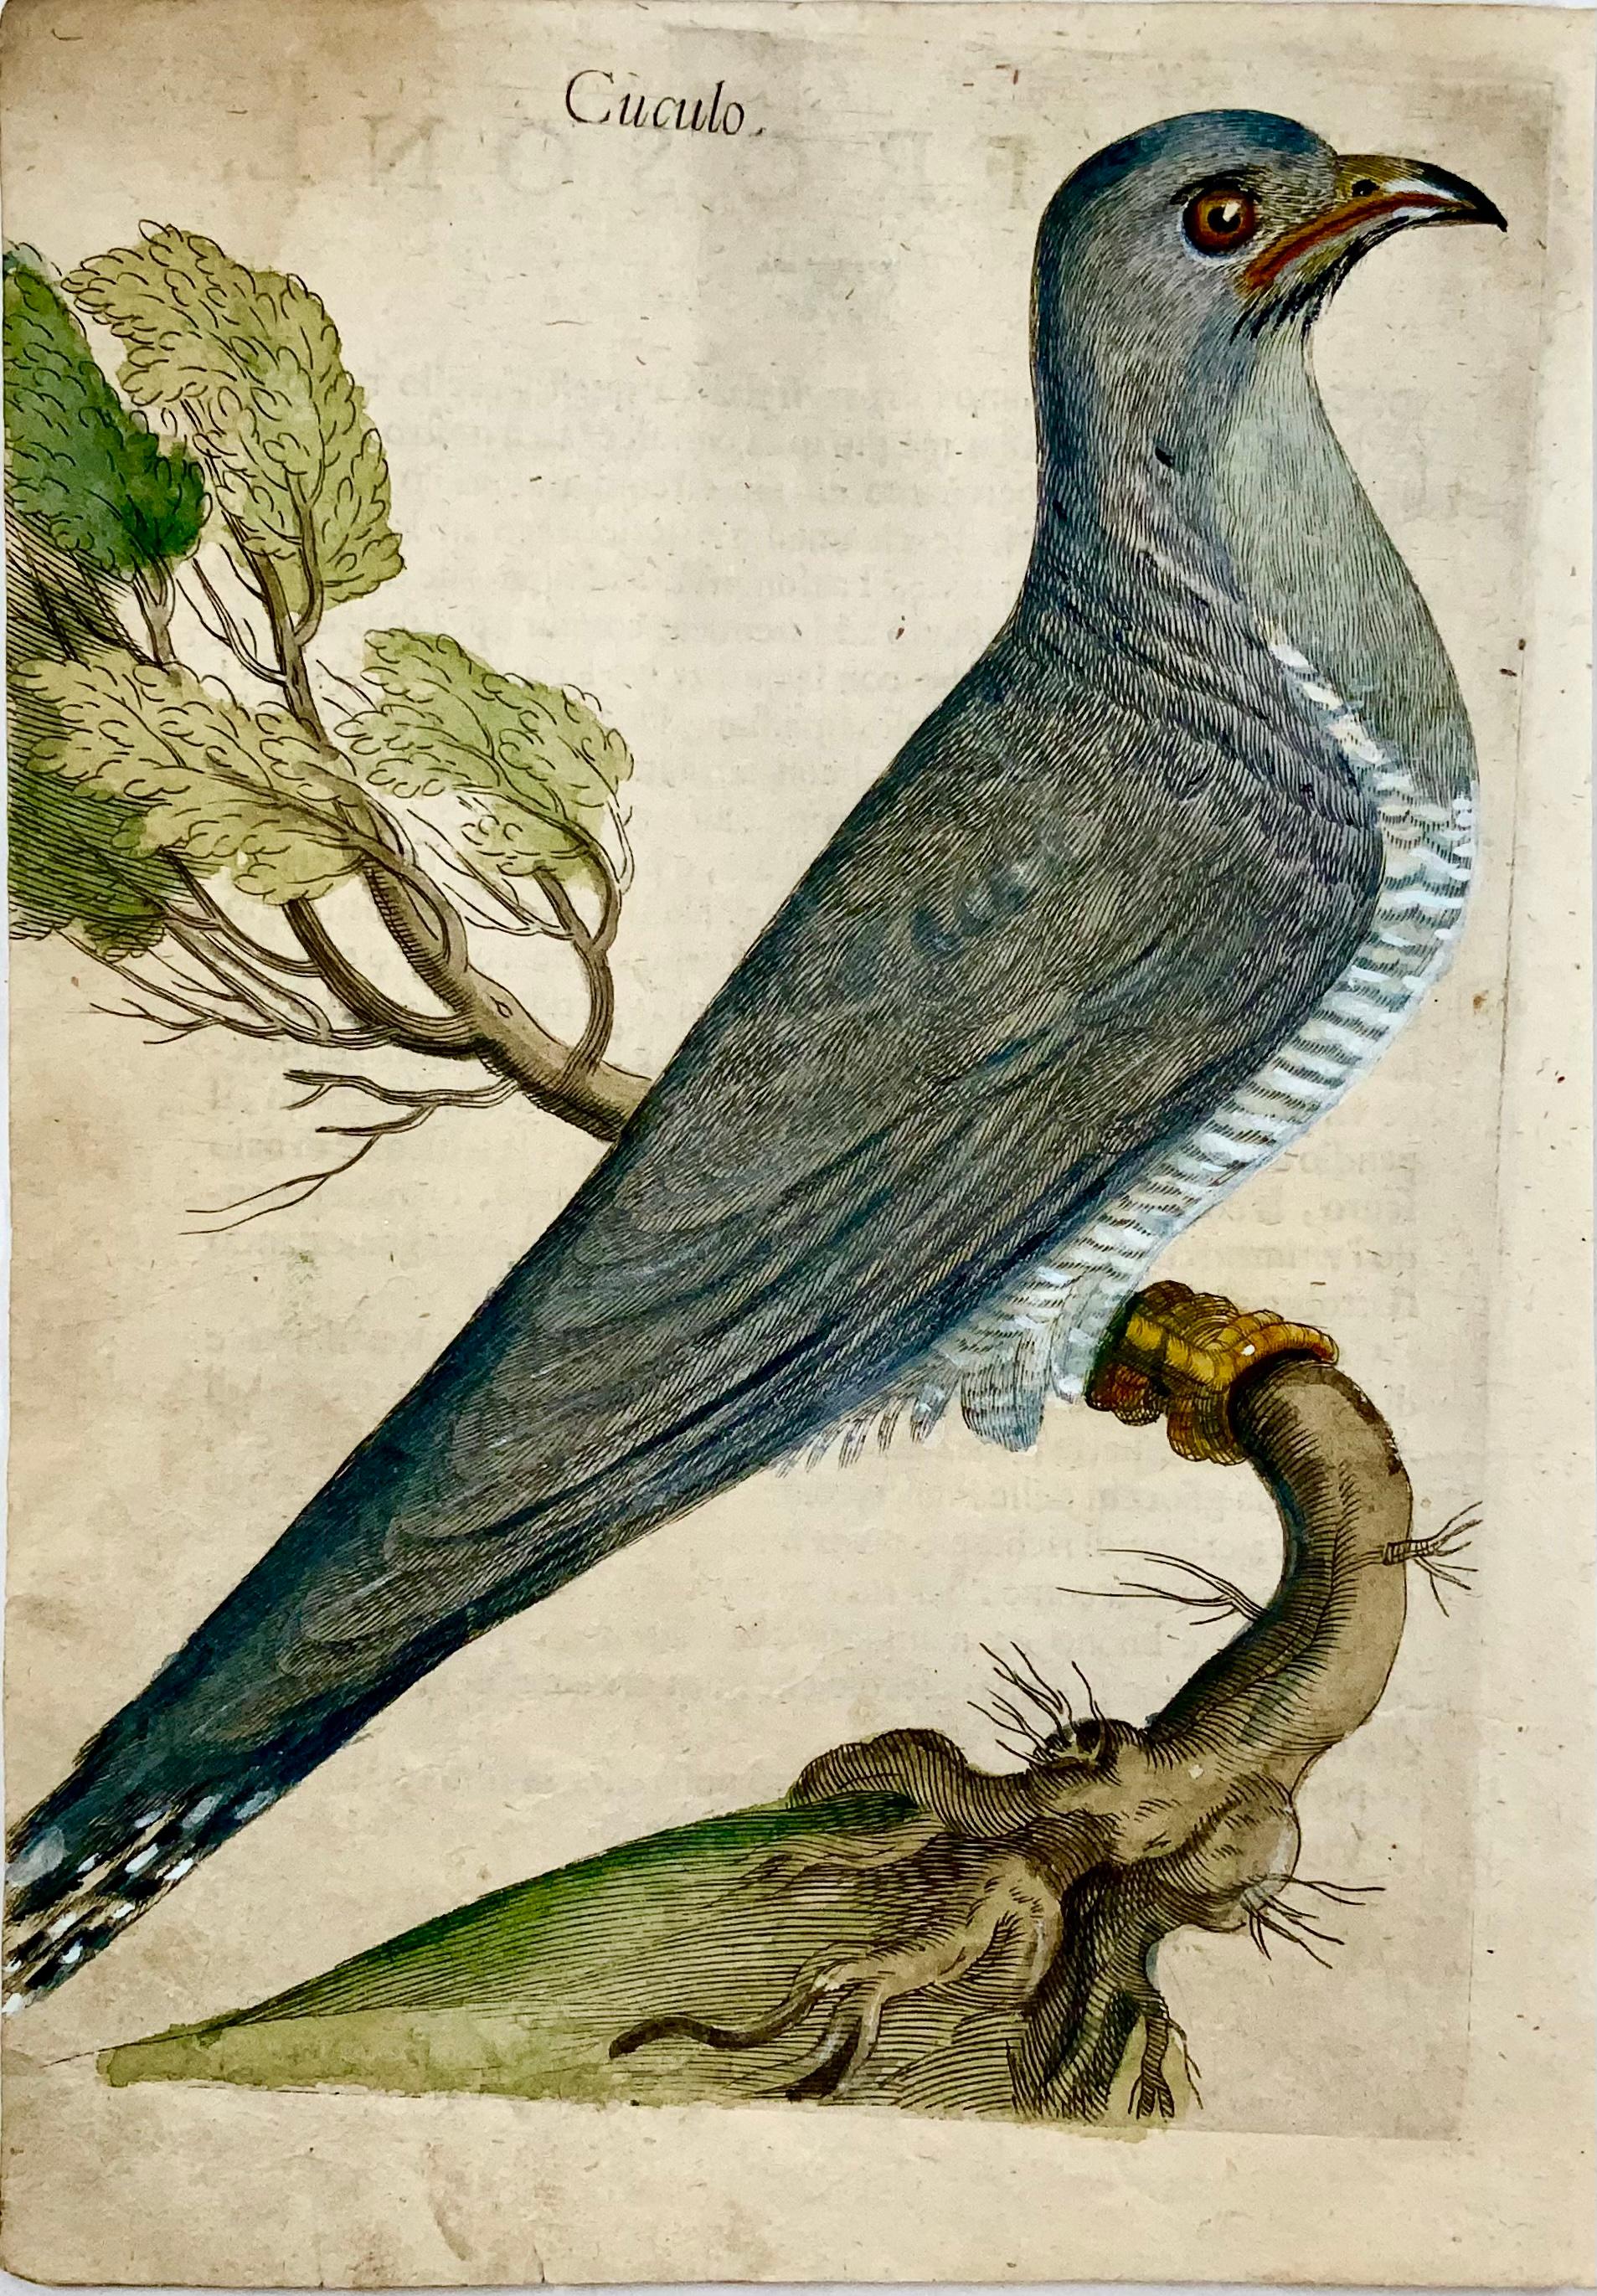 Copper engraving published by Giovanni Pietro Olina (1585-1645) for his scarce treatise: 

Uccellera overo discorso della natura e proprieta di diversi uccelli. 

Rome: Andrea Fei, 1622. 

Dimensions:

Height: 8.82 in. (22.4 cm)

Width: